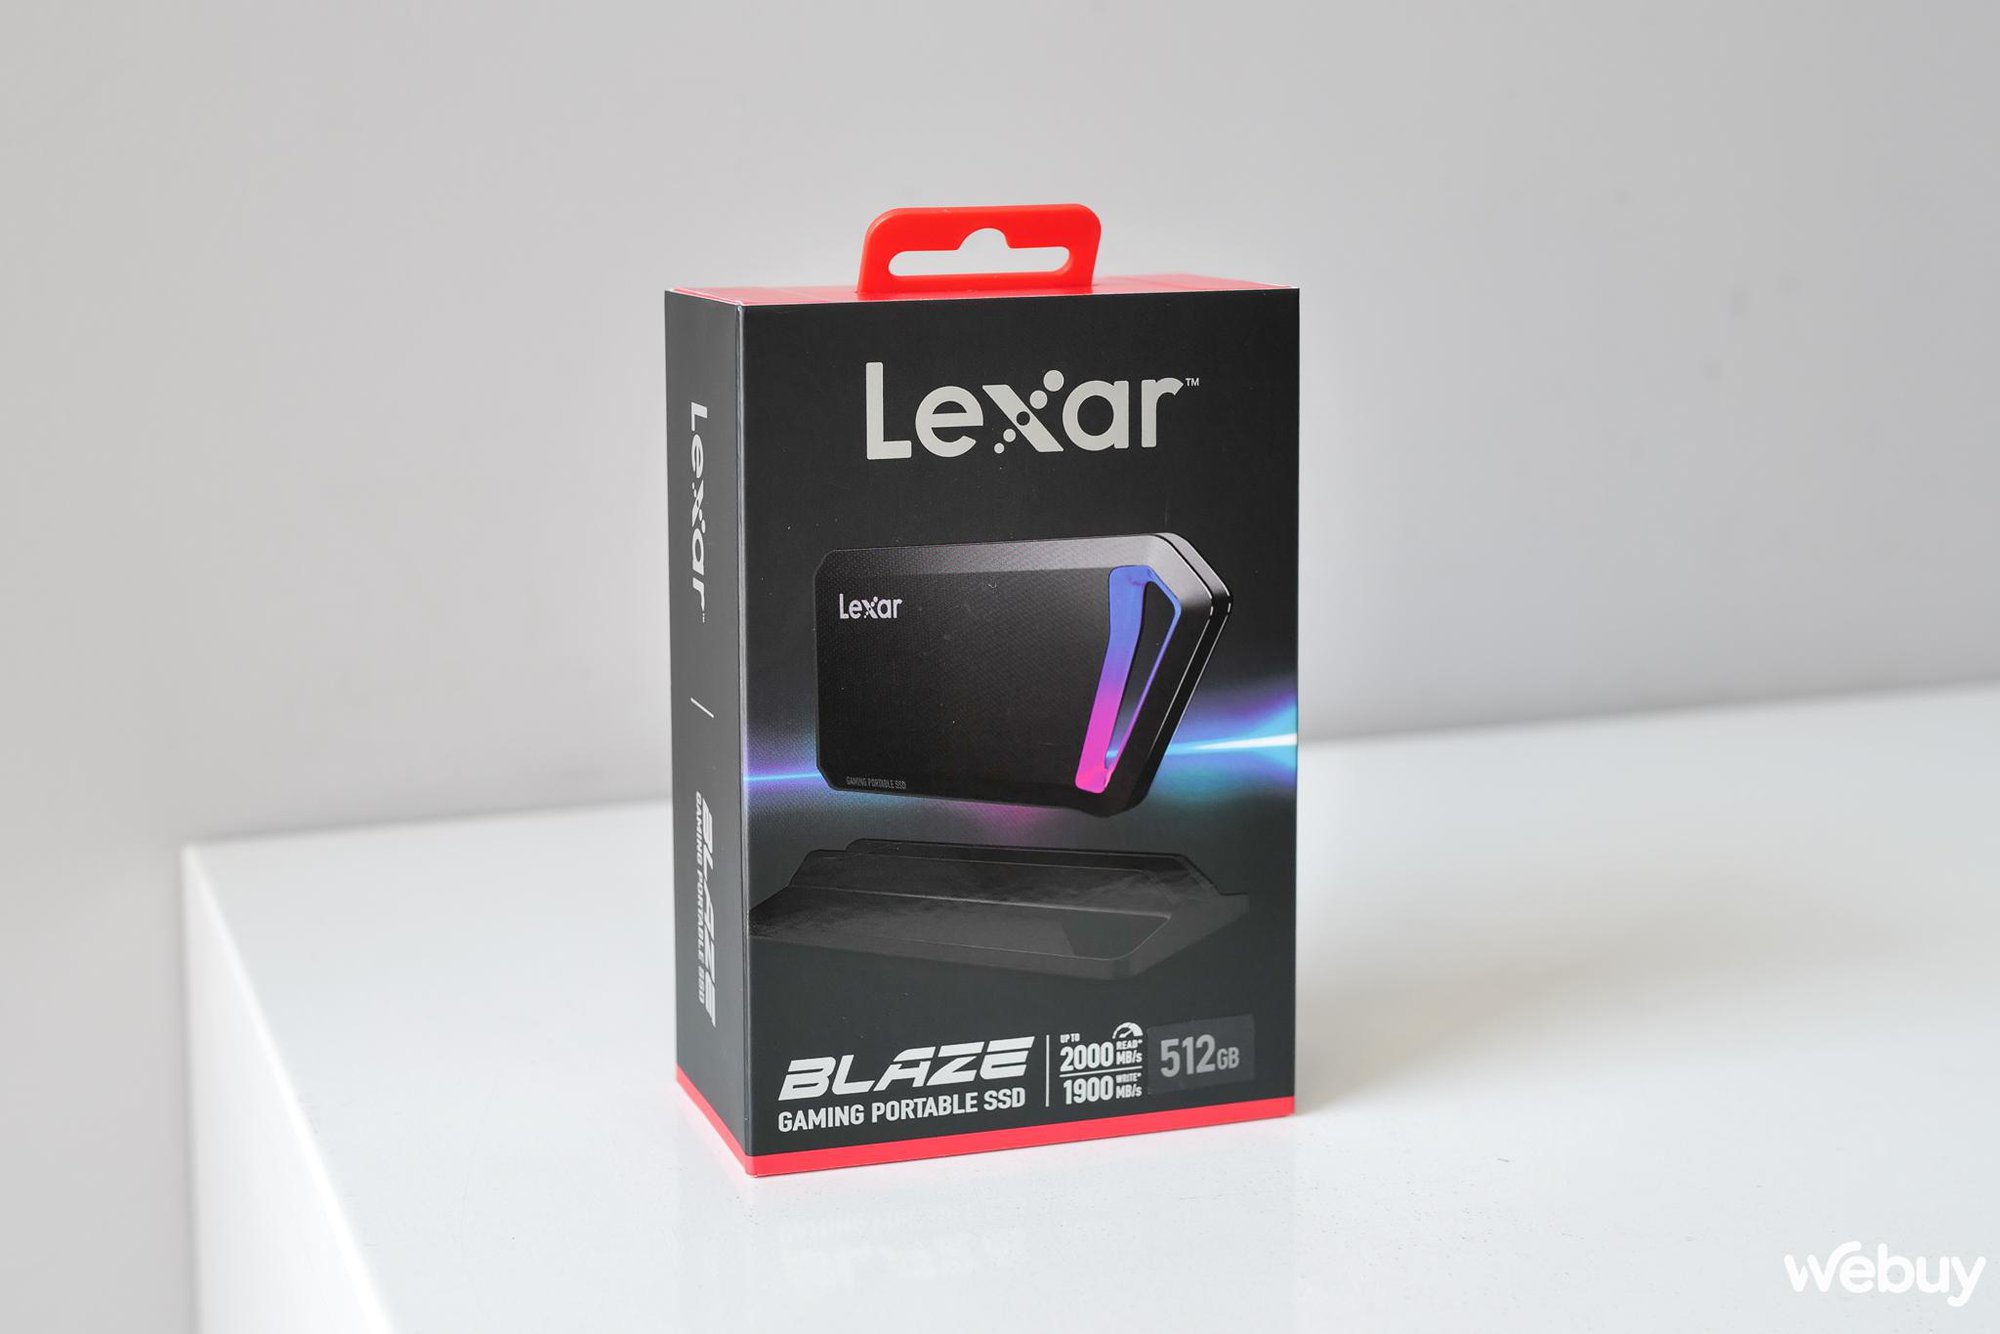 Đánh giá nhanh SSD Lexar Blaze SL660 512GB: Khi ổ SSD di động cũng có phiên bản dành cho game thủ - Ảnh 1.